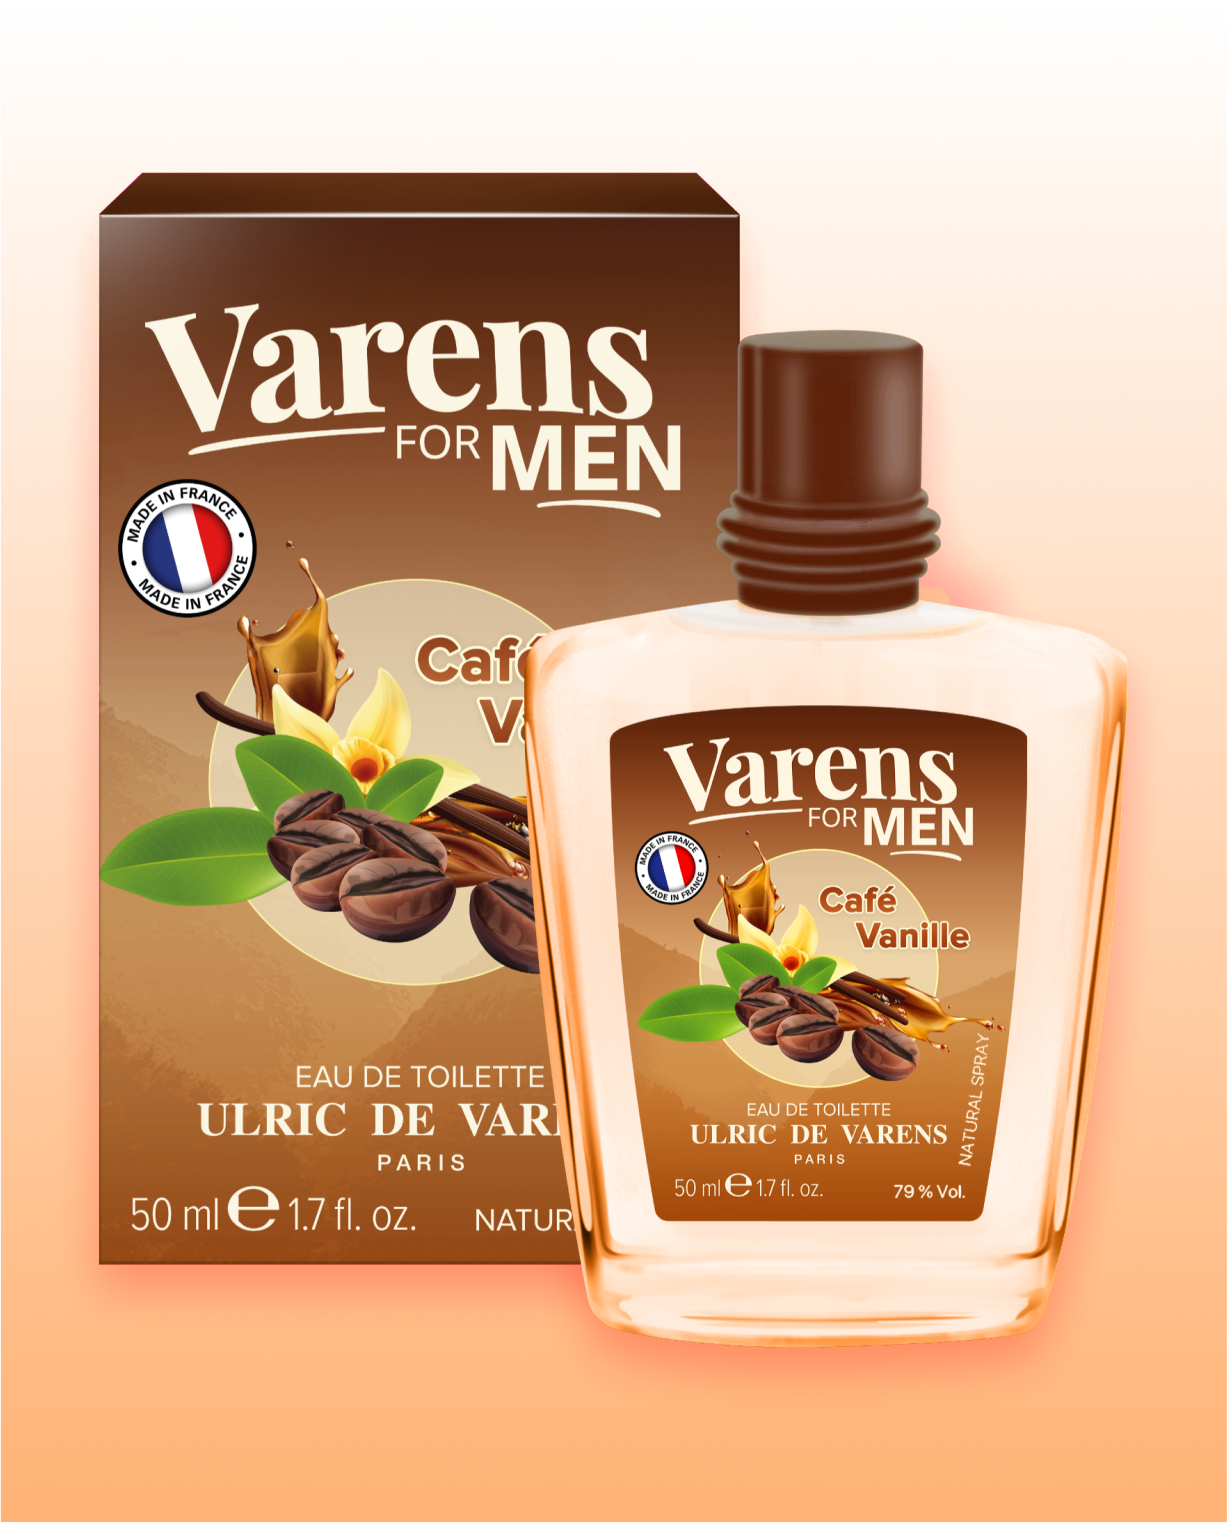 Varens For Men Cafe Vanille - Ulric de Varens -  - #tag1# - #tag2# - #tag3# - #tag4#